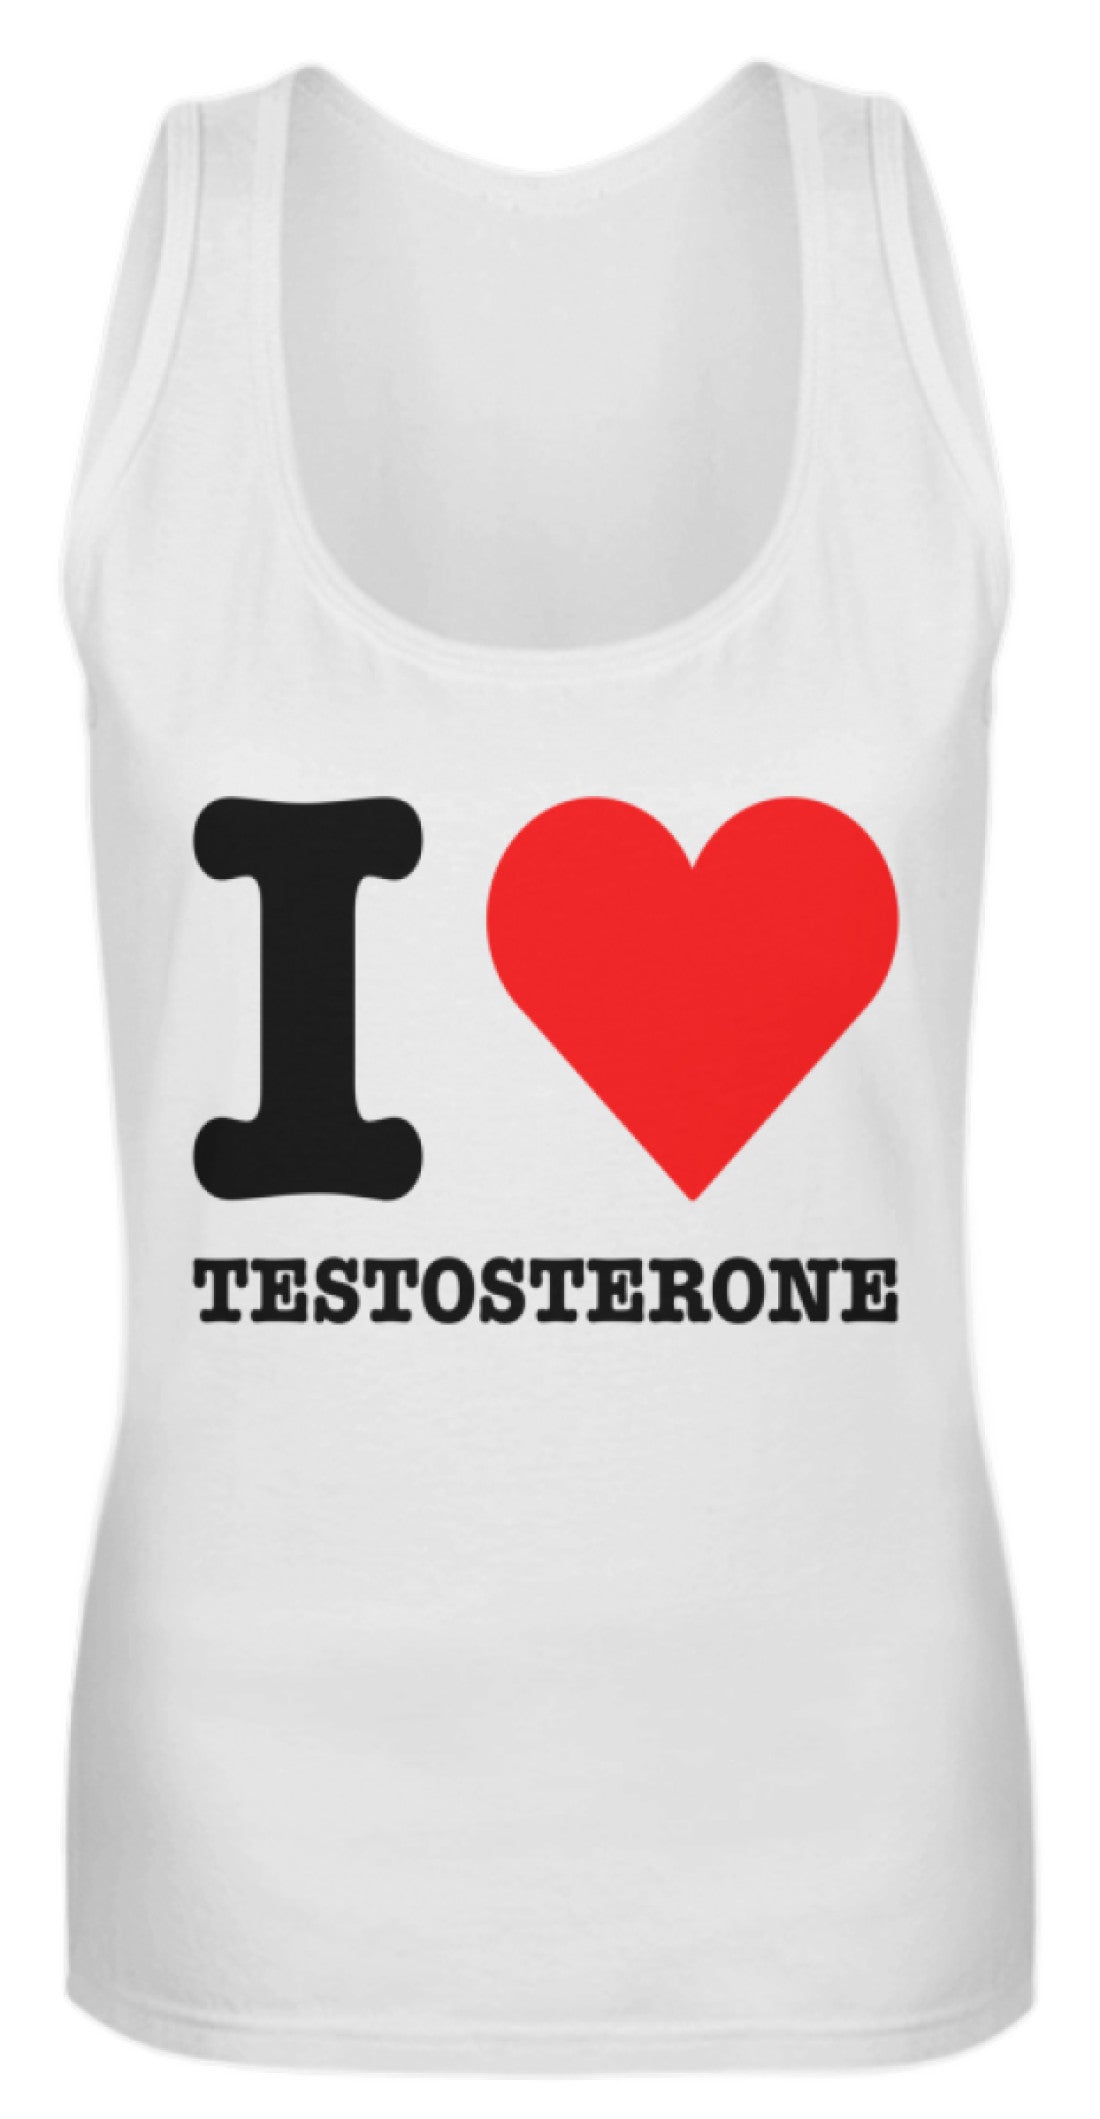 Ich liebe Testosteron | Coole Kleidung für Bodybuilder und Kraftsportler | Lustiger Spruch | Frauen Tank Top in White in Größe S